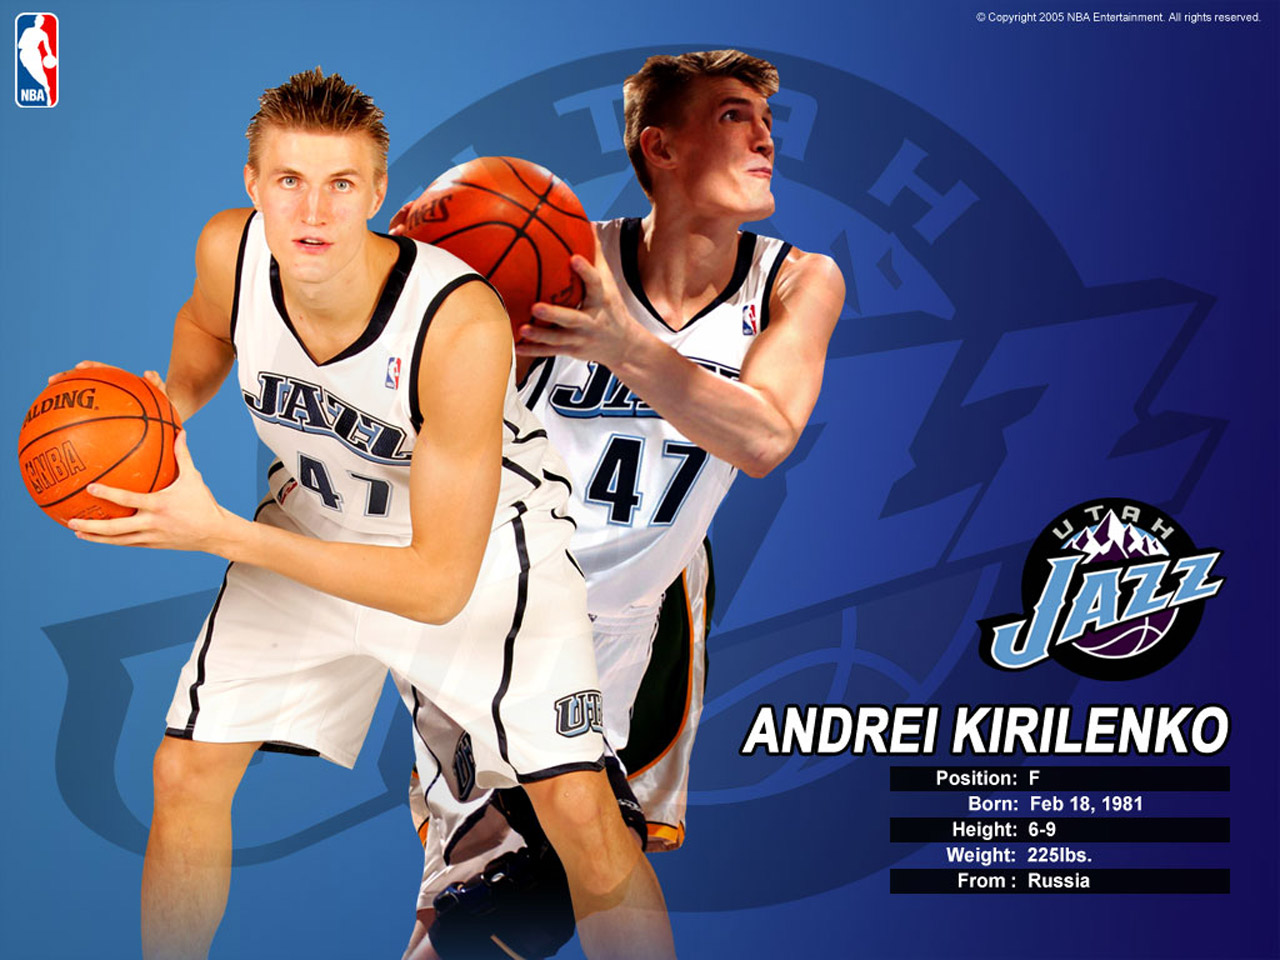 Andrei Kirilenko Wallpaper Basket, basketball, Pictures Galleries, Desktop, picture